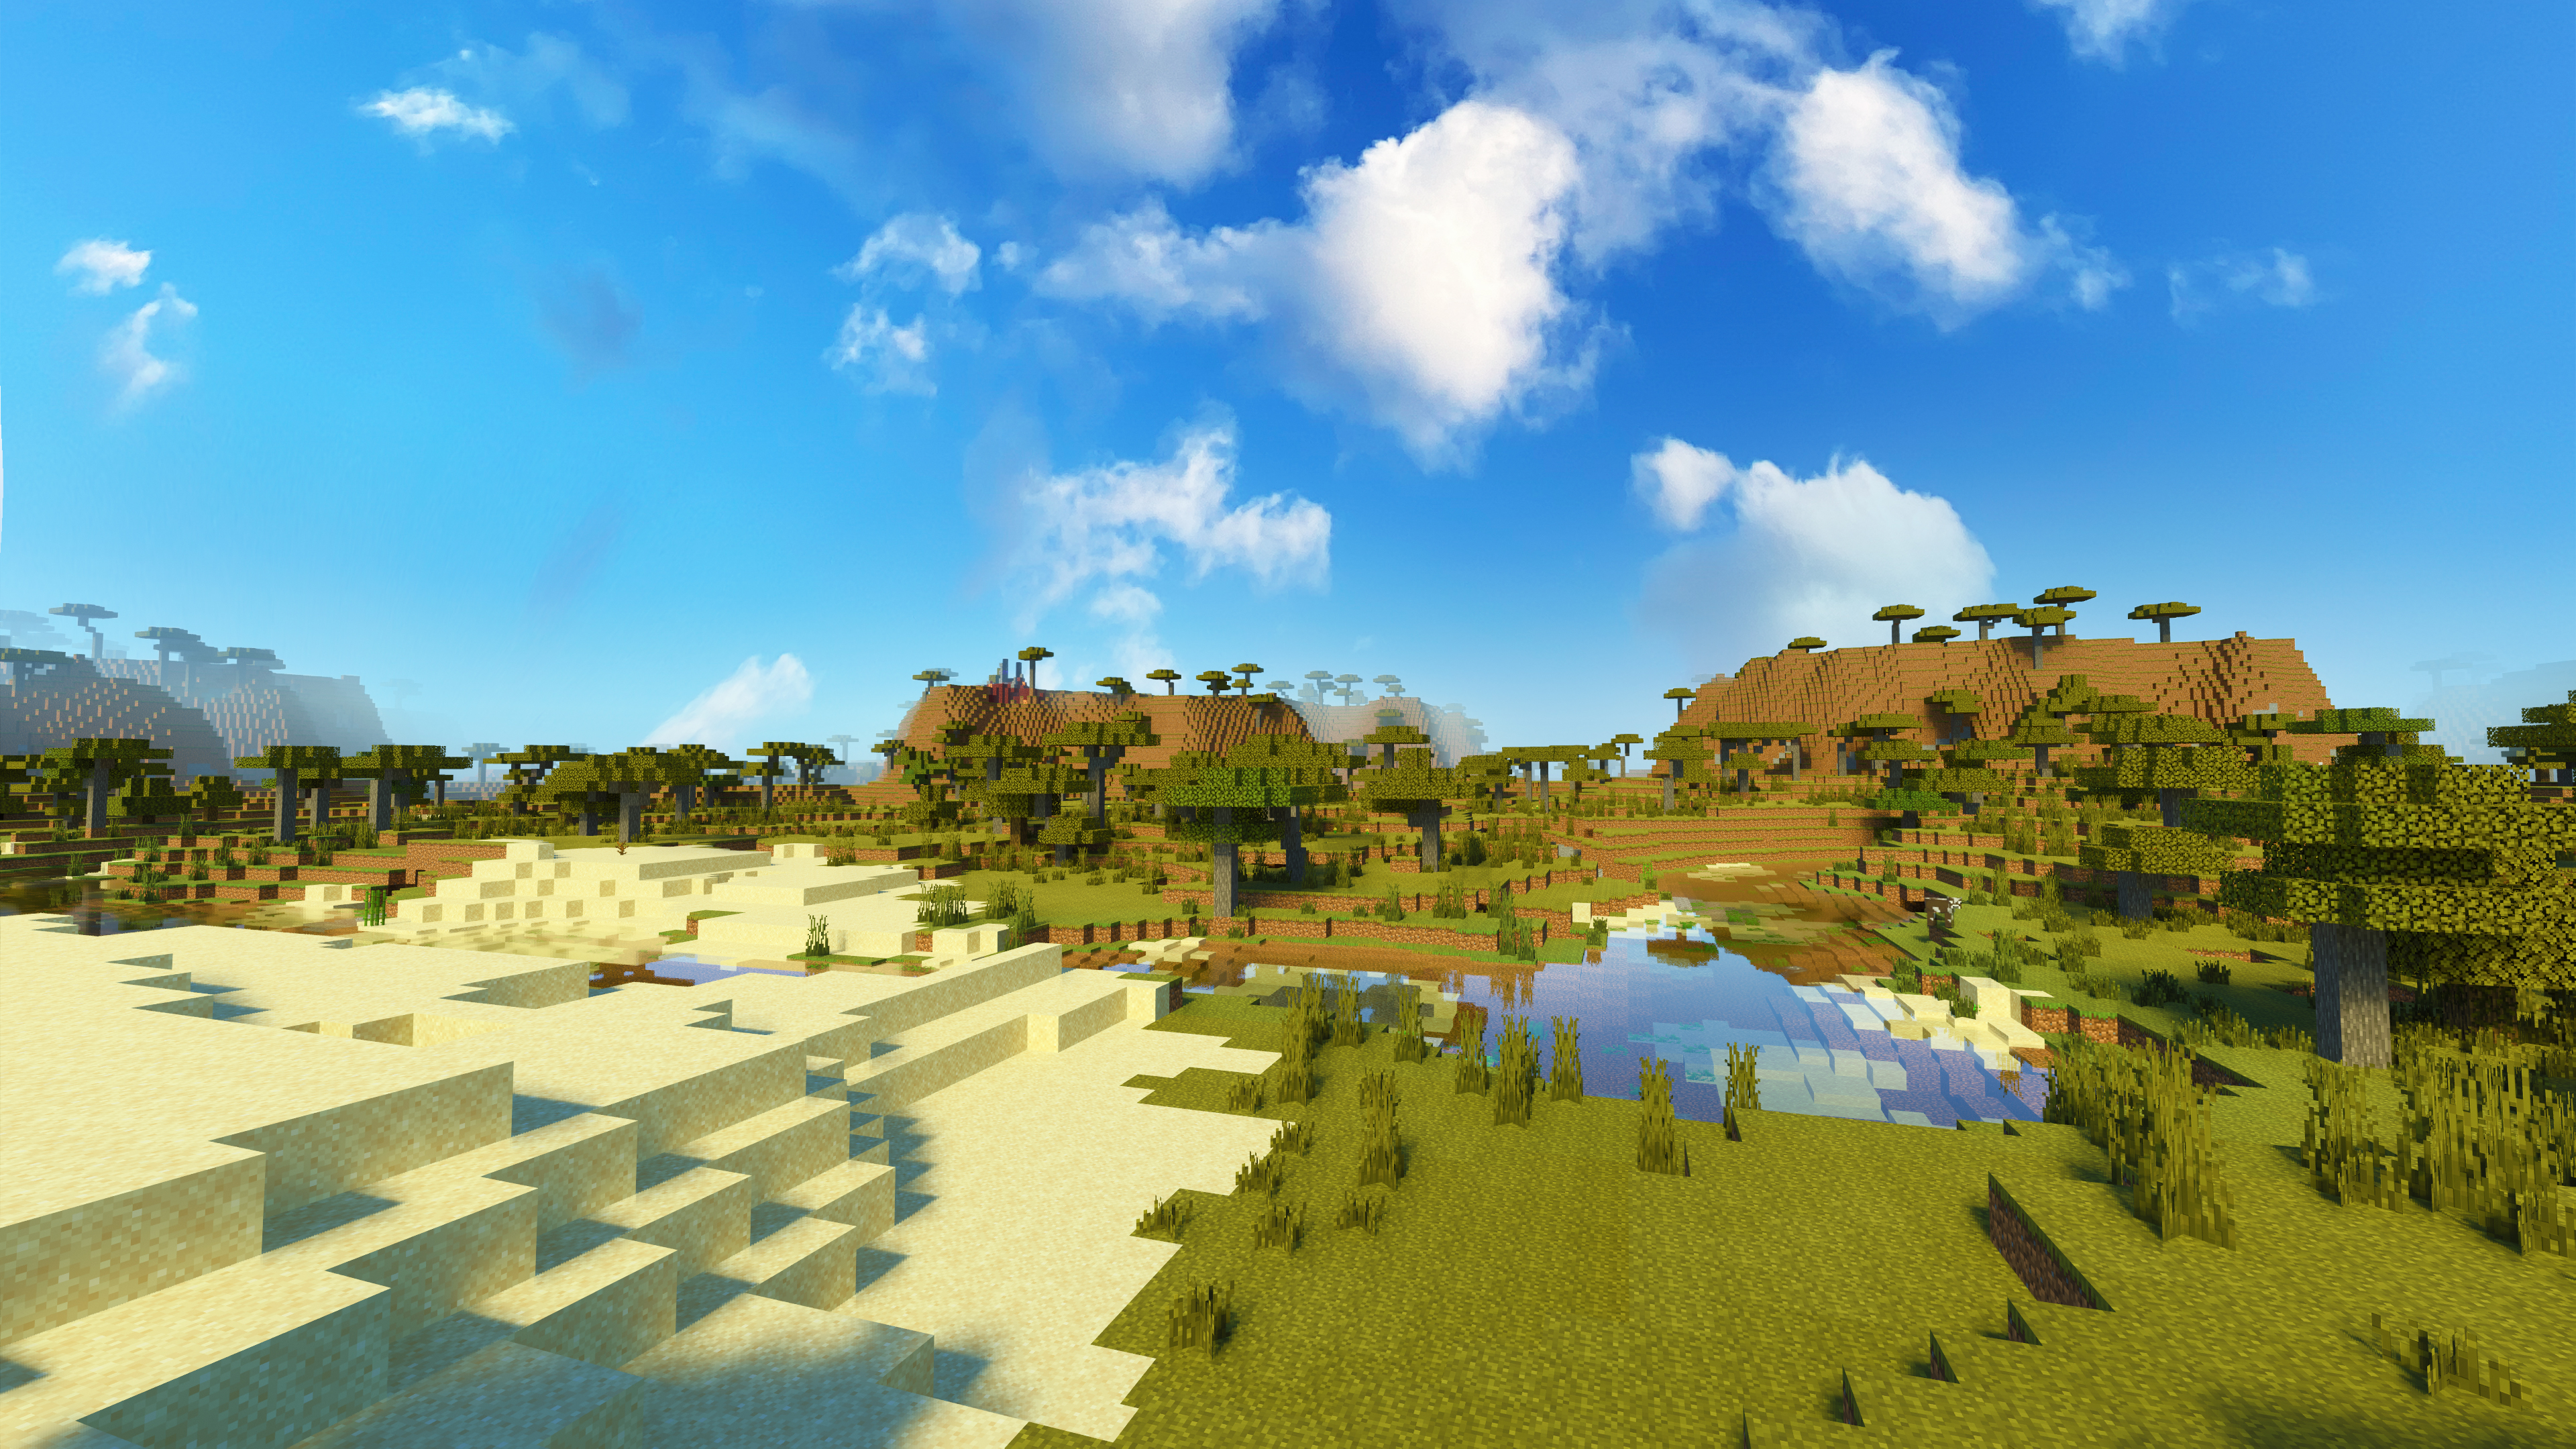 Hình nền Minecraft nhìn đẹp: Bạn muốn có một bức hình nền Minecraft đẹp, thu hút mọi ánh nhìn khi mở màn hình? Đây chắc chắn là điều bạn đang tìm kiếm! Hãy khám phá ngay những bức hình nền Minecraft nhìn đẹp để làm nền cho máy tính của bạn.